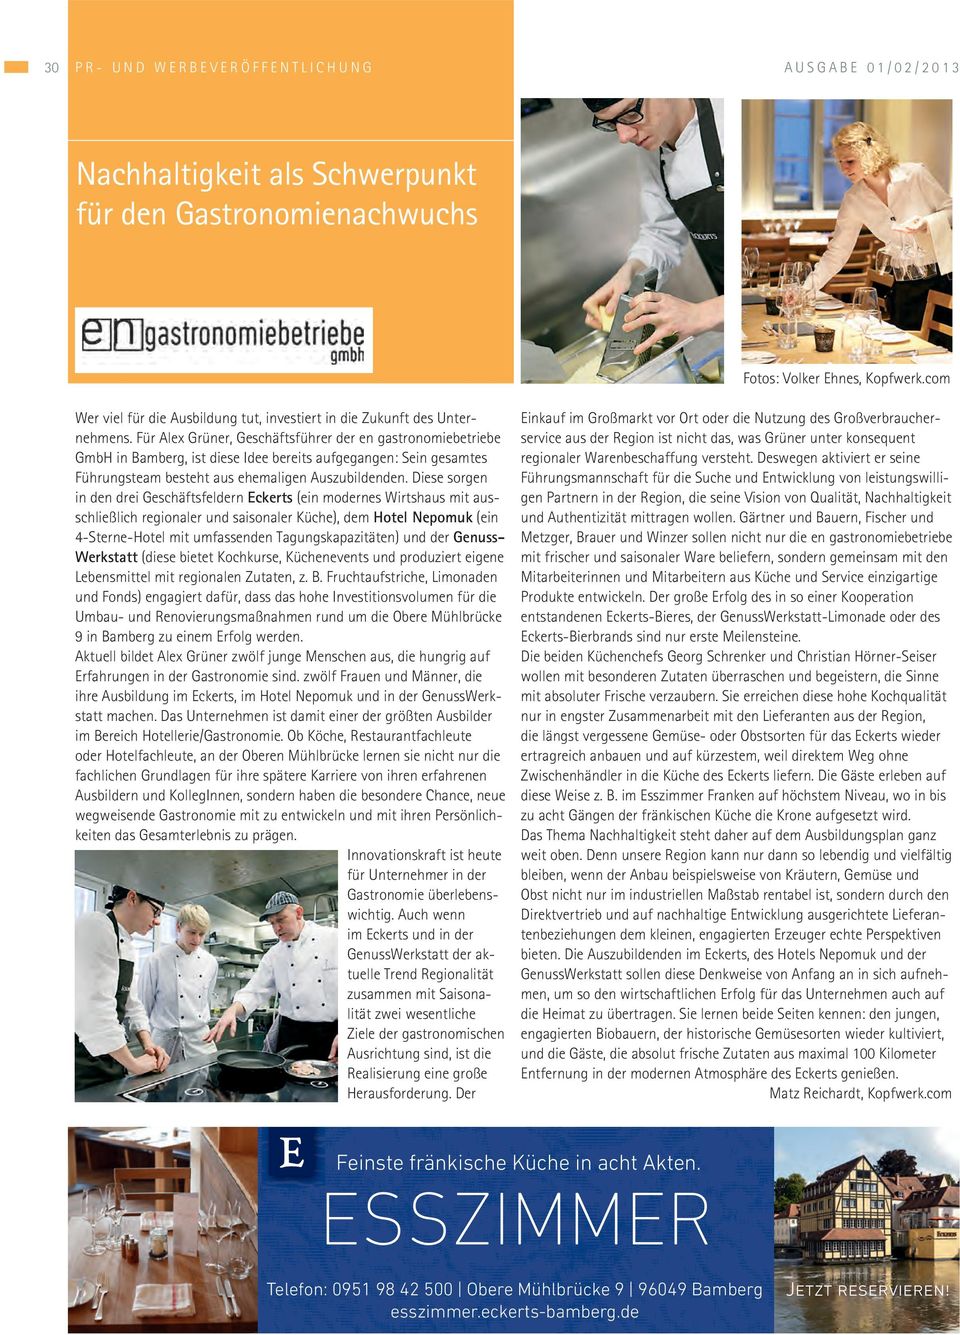 Für Alex Grüner, Geschäftsführer der en gastronomiebetriebe GmbH in Bamberg, ist diese Idee bereits aufgegangen: Sein gesamtes Führungsteam besteht aus ehemaligen Auszubildenden.